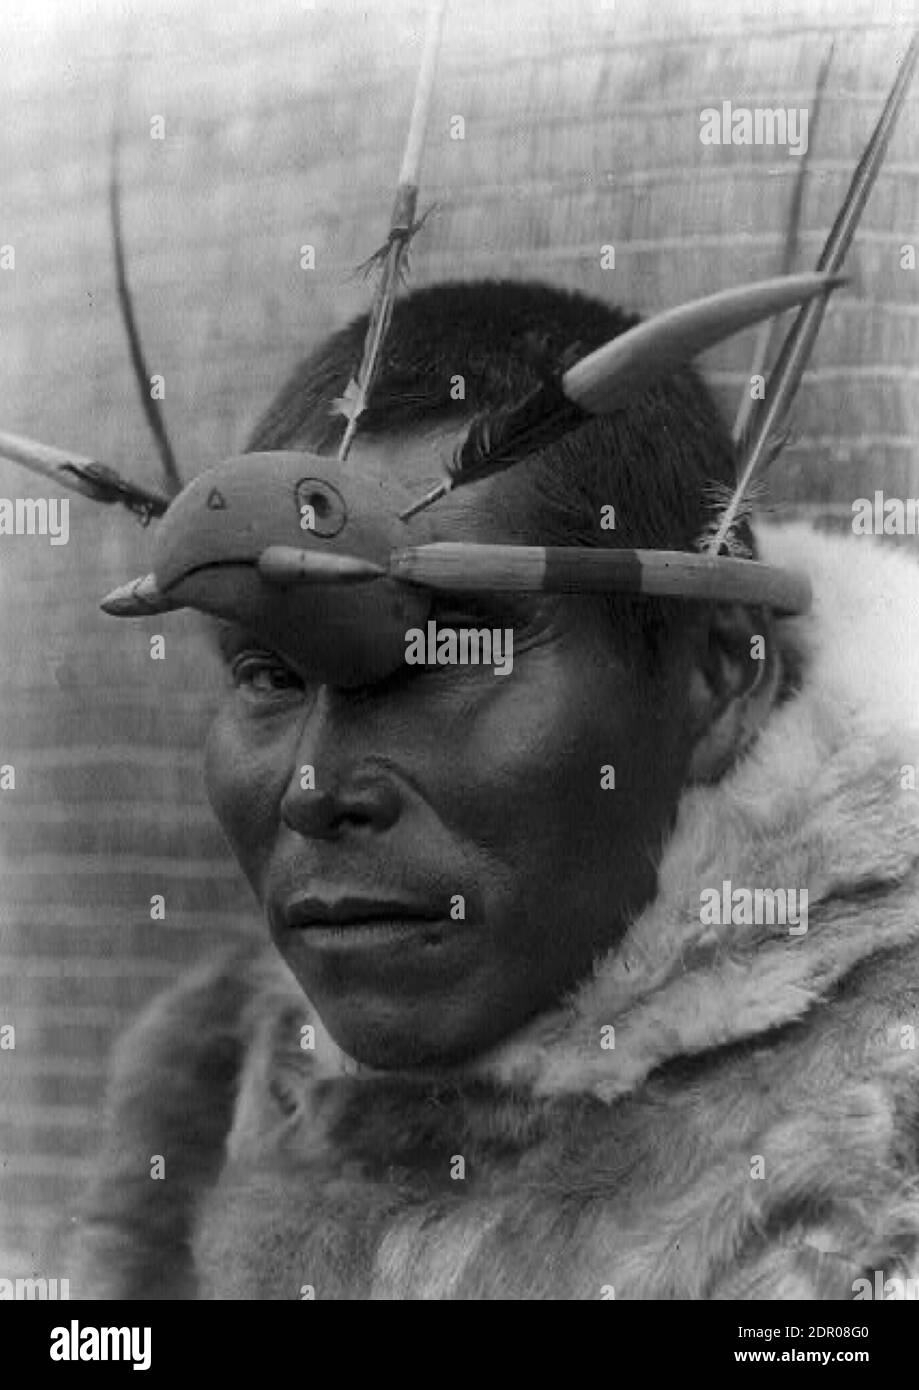 Fotografia d'epoca di un uomo di Nunivak, Alaska USA. La fotografia è stata scattata da Edward S Curtis nel 1927 Foto Stock